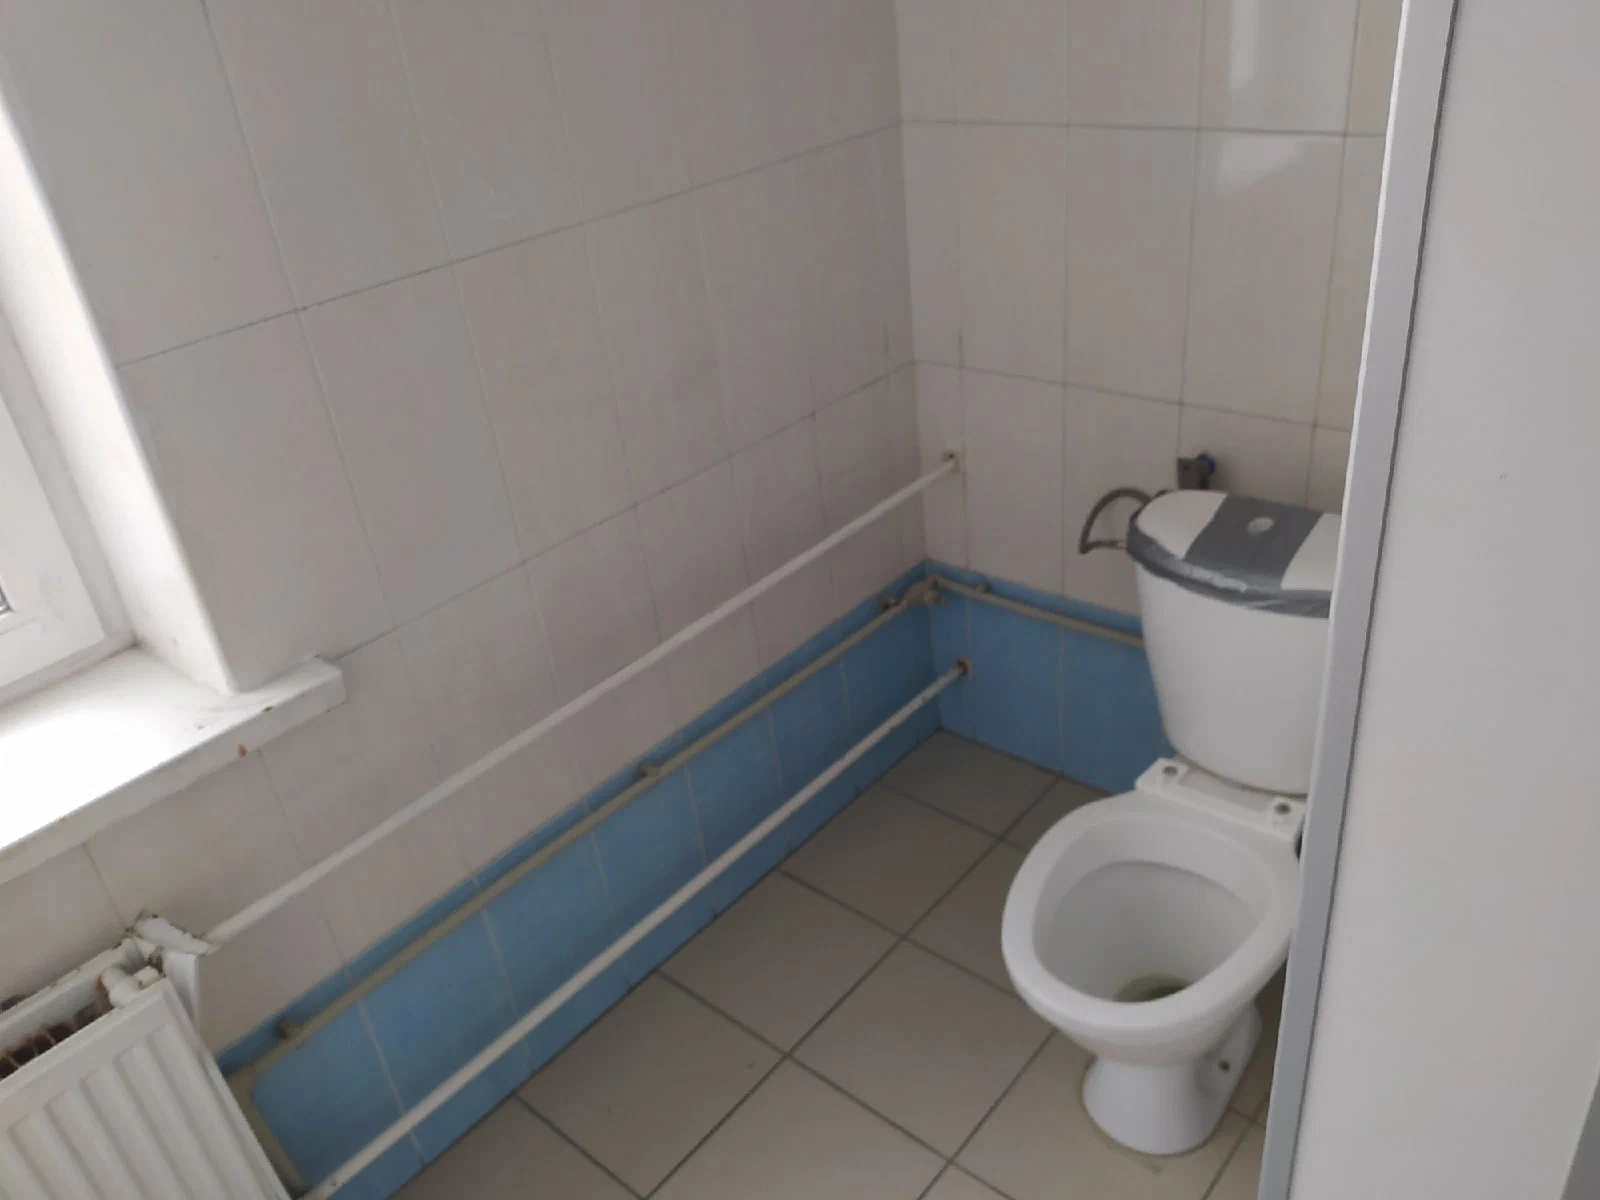 Кто и зачем устанавливает скрытые камеры в общественных туалетах